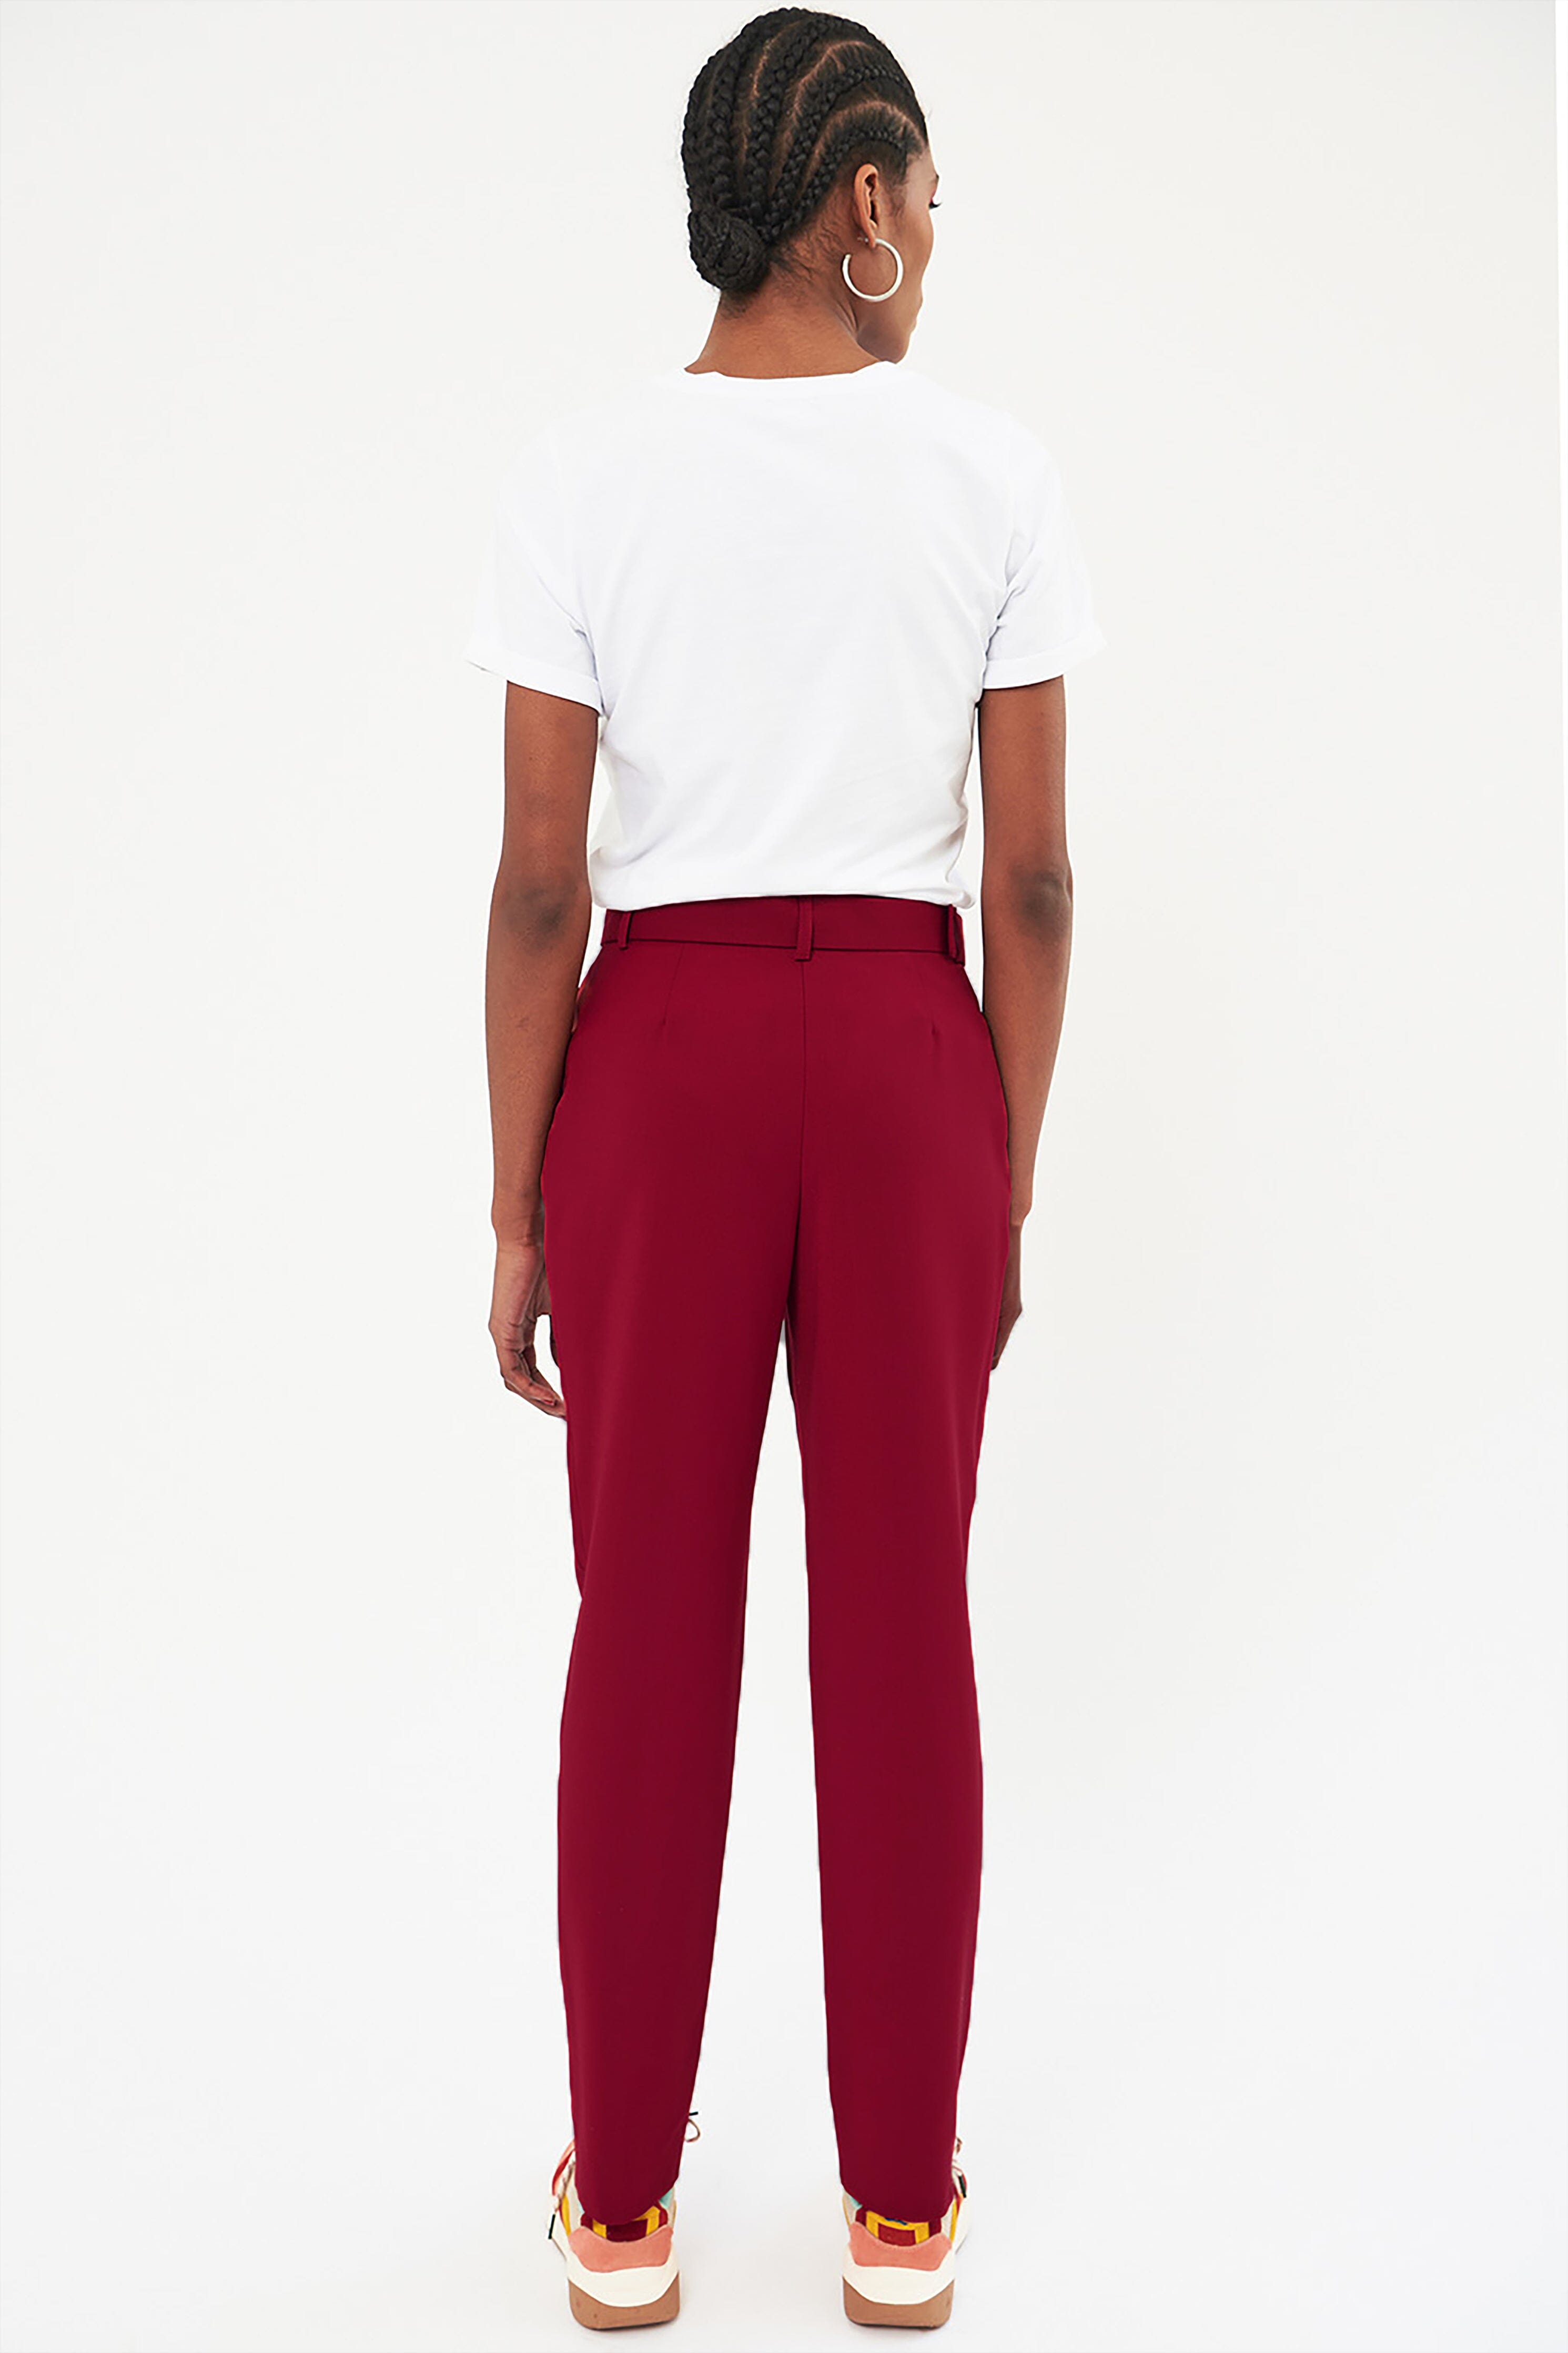 pantalon-casablanca-ceinturé-carmin-rouge-chic-élégant-made-in-europe-marque-française-savoir-faire-sartorial-